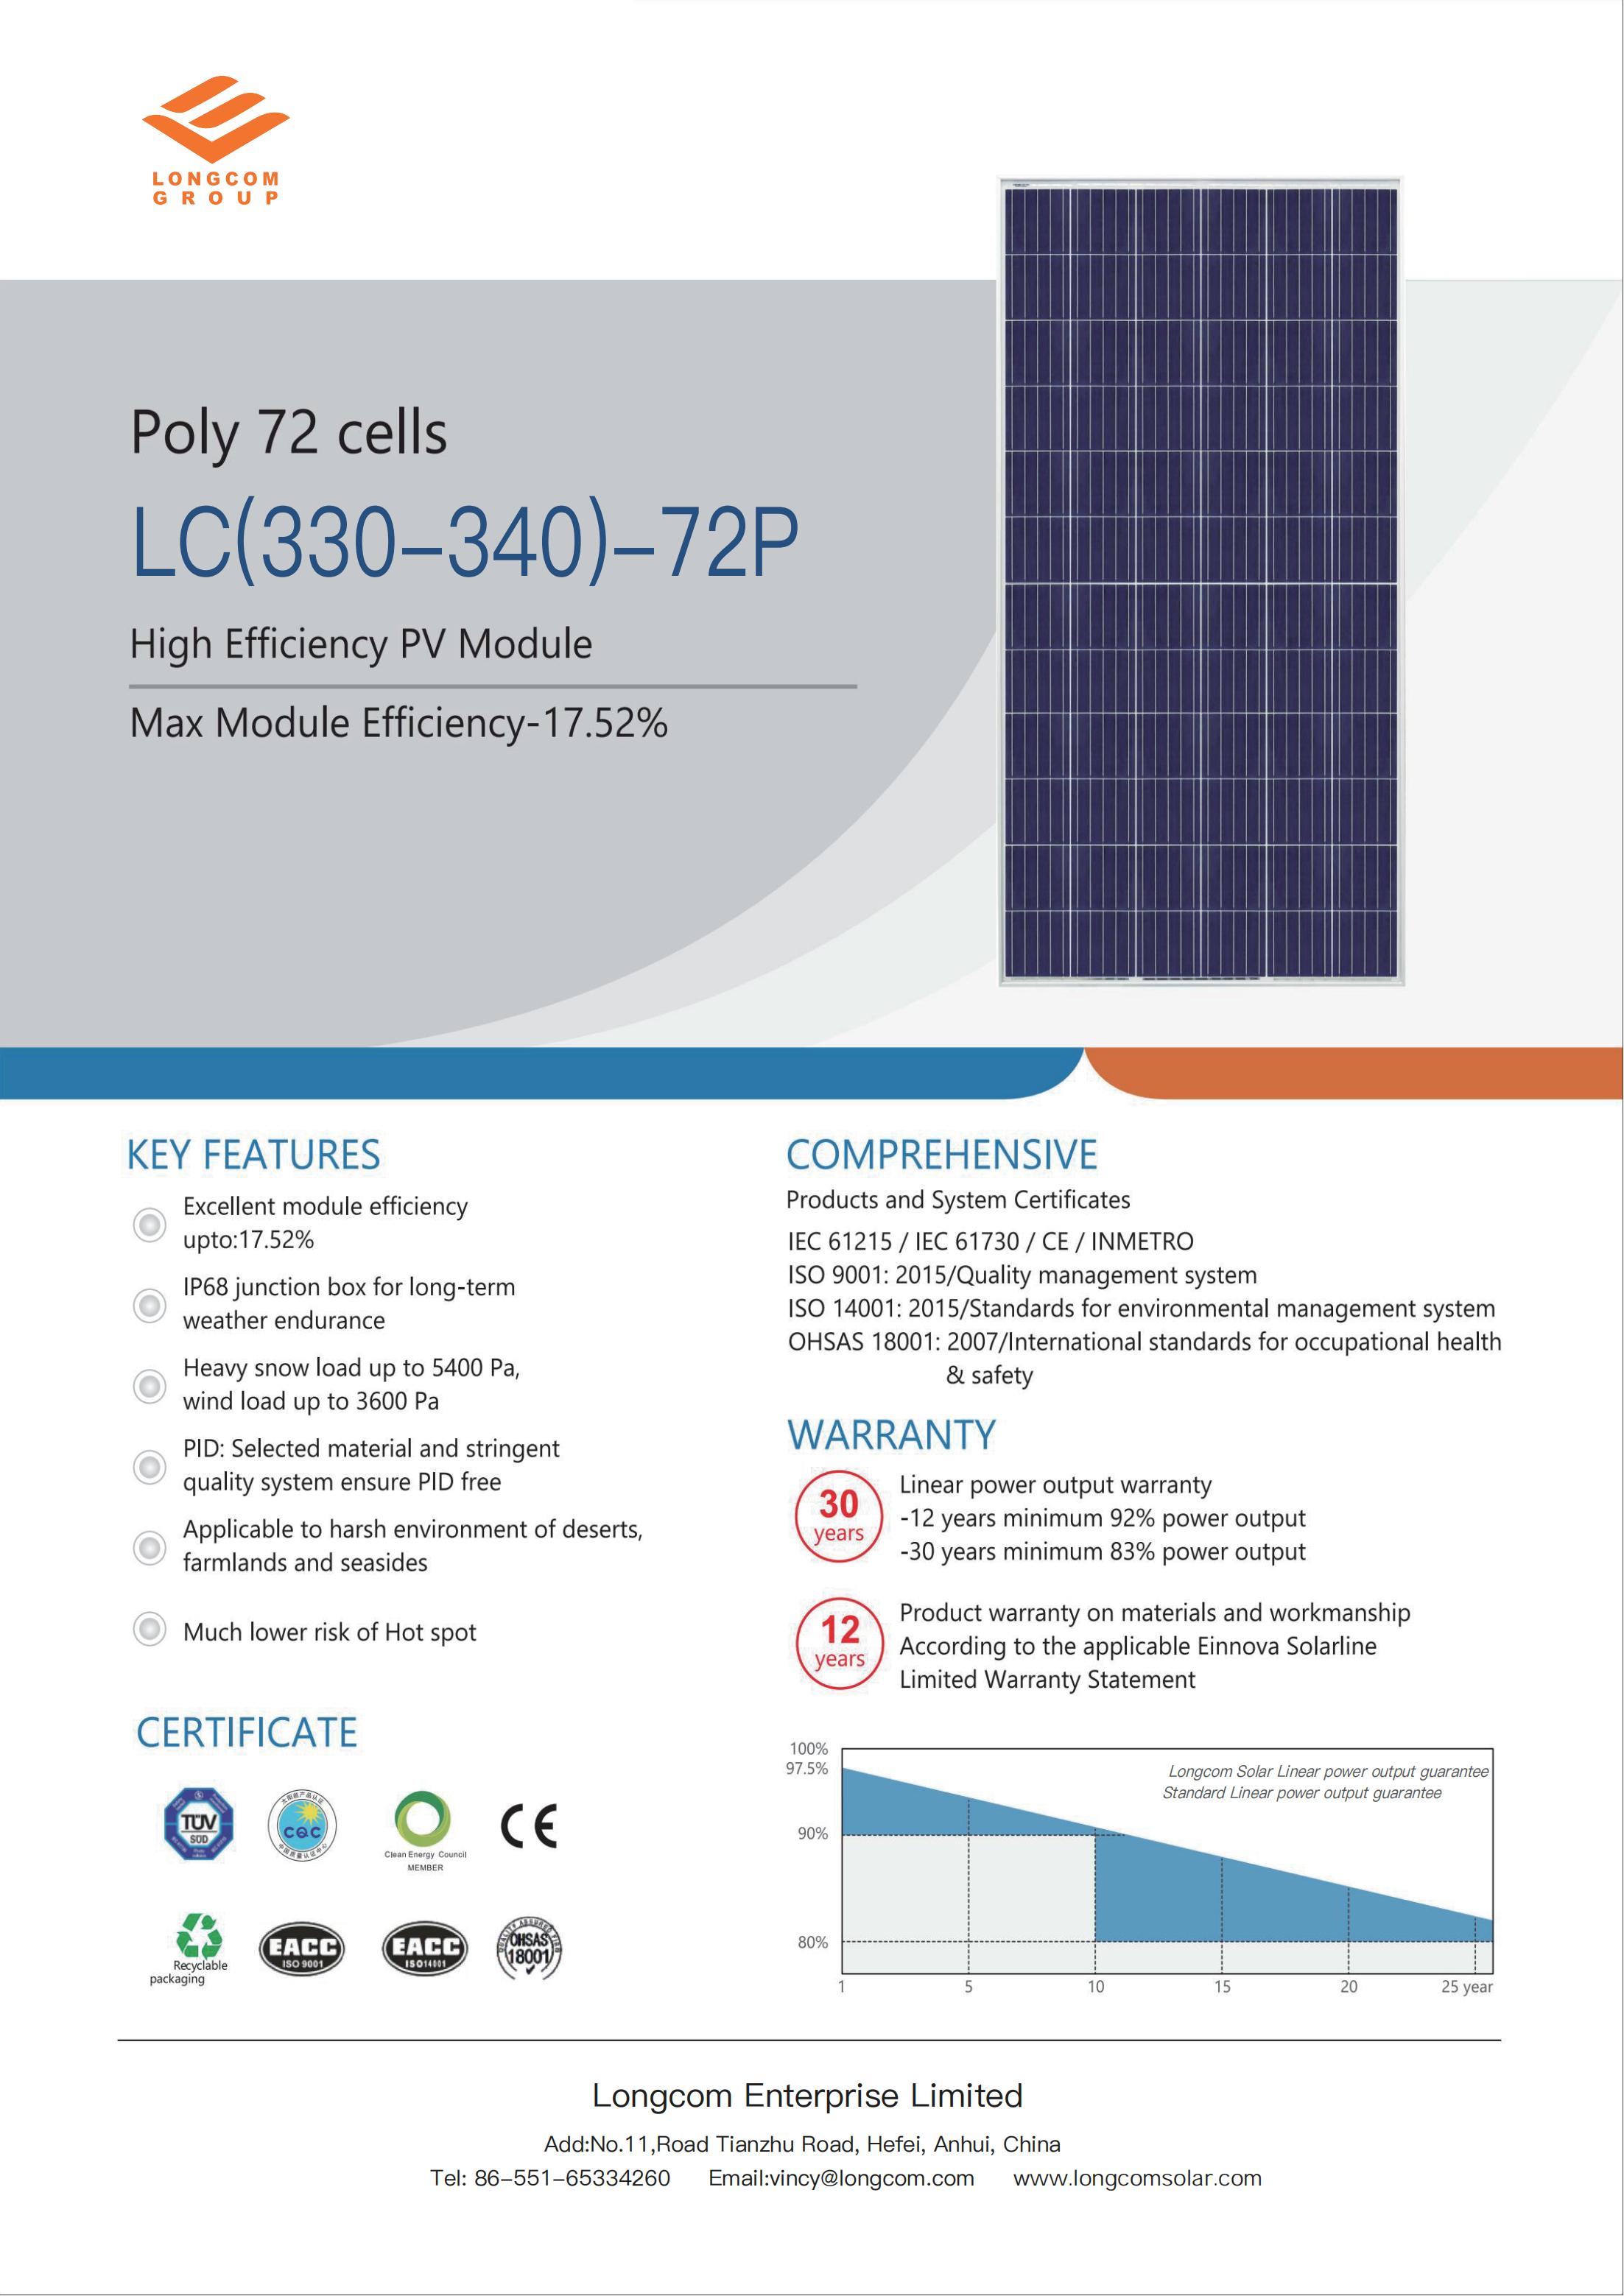 Pannello solare a celle solari policristalline da 72 celle